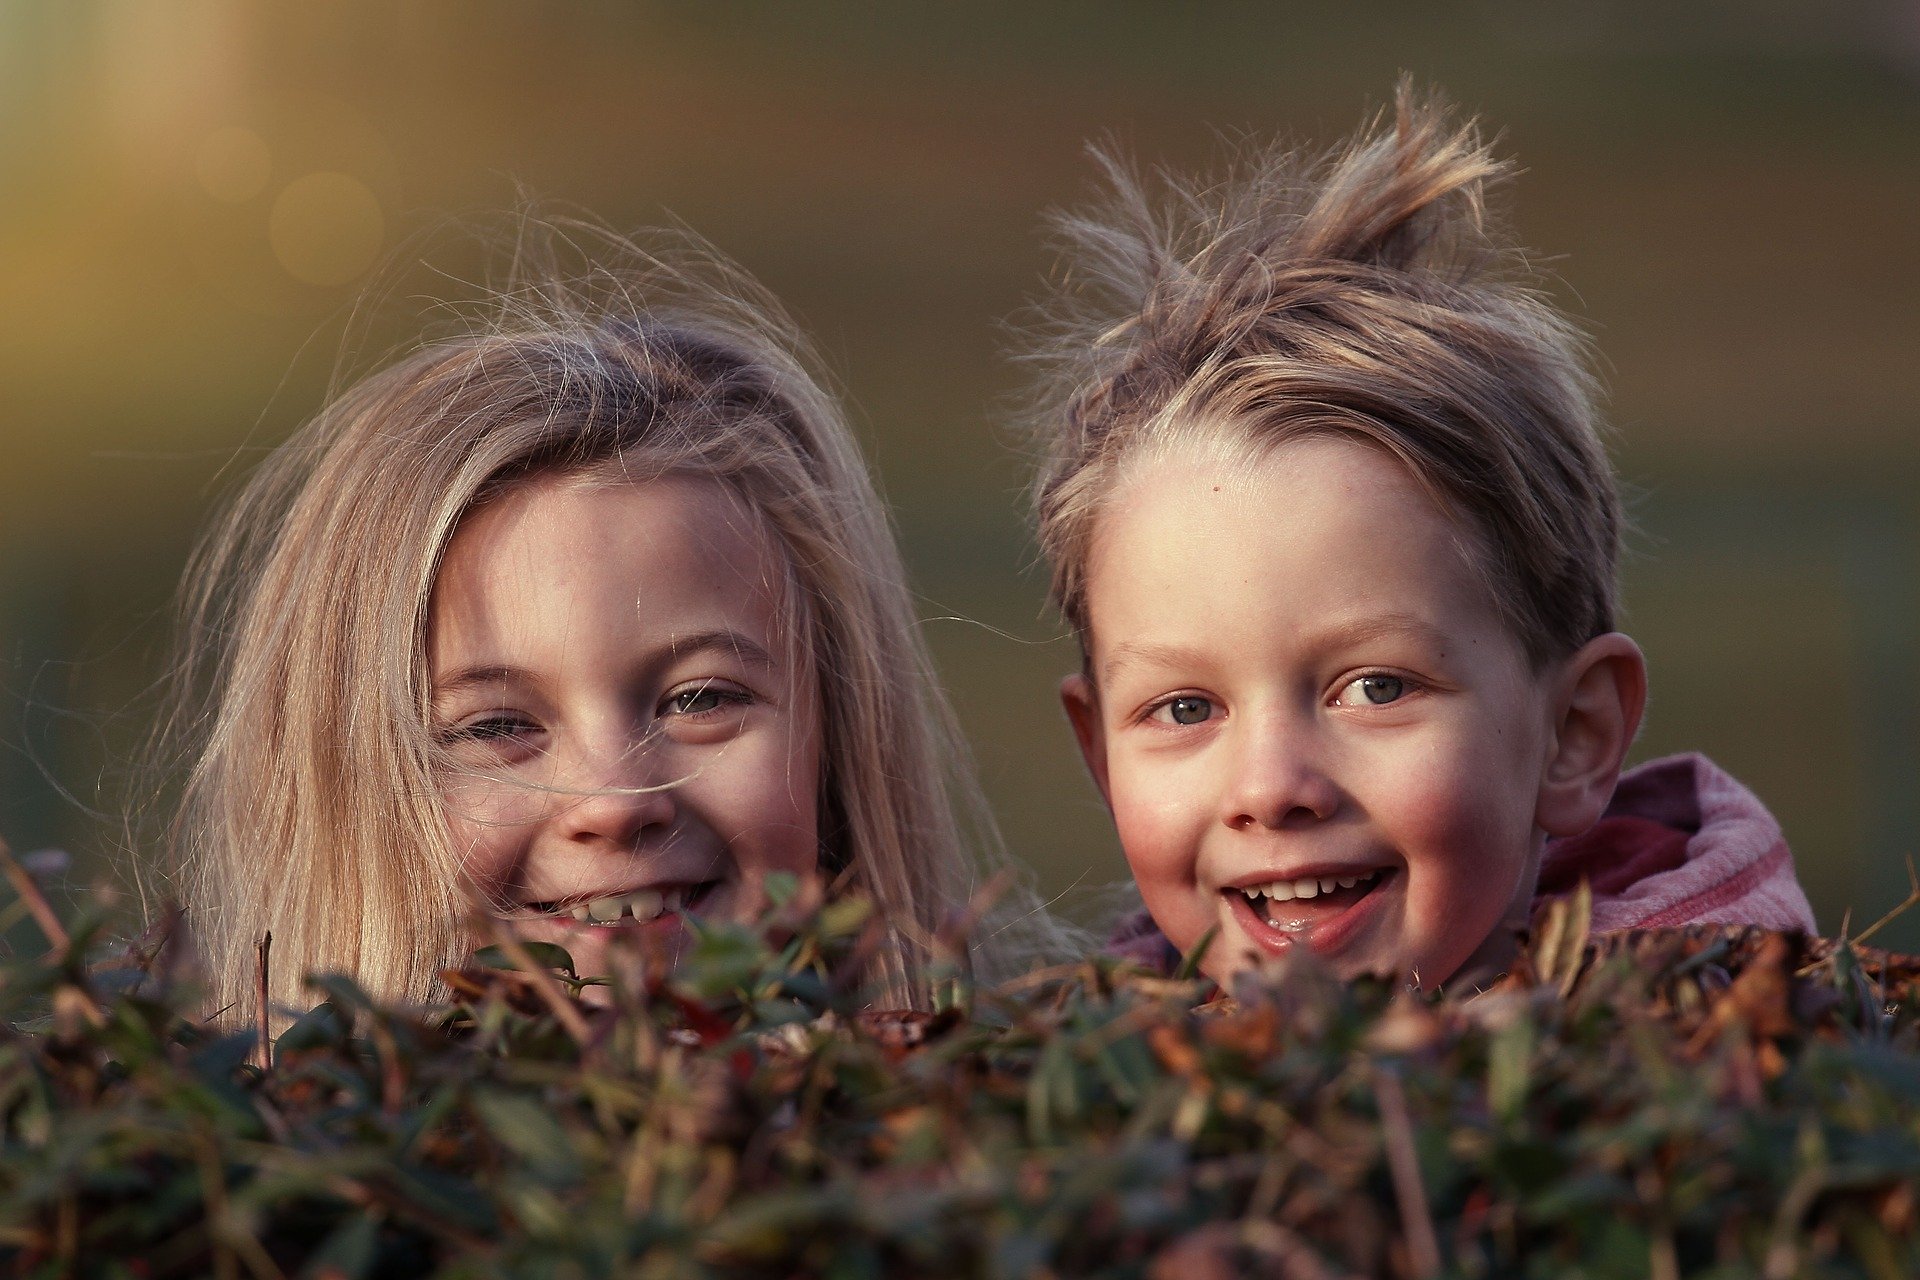 Bilde av ansiktene til to barn. Foto: Lenka Fortelna fra Pixabay